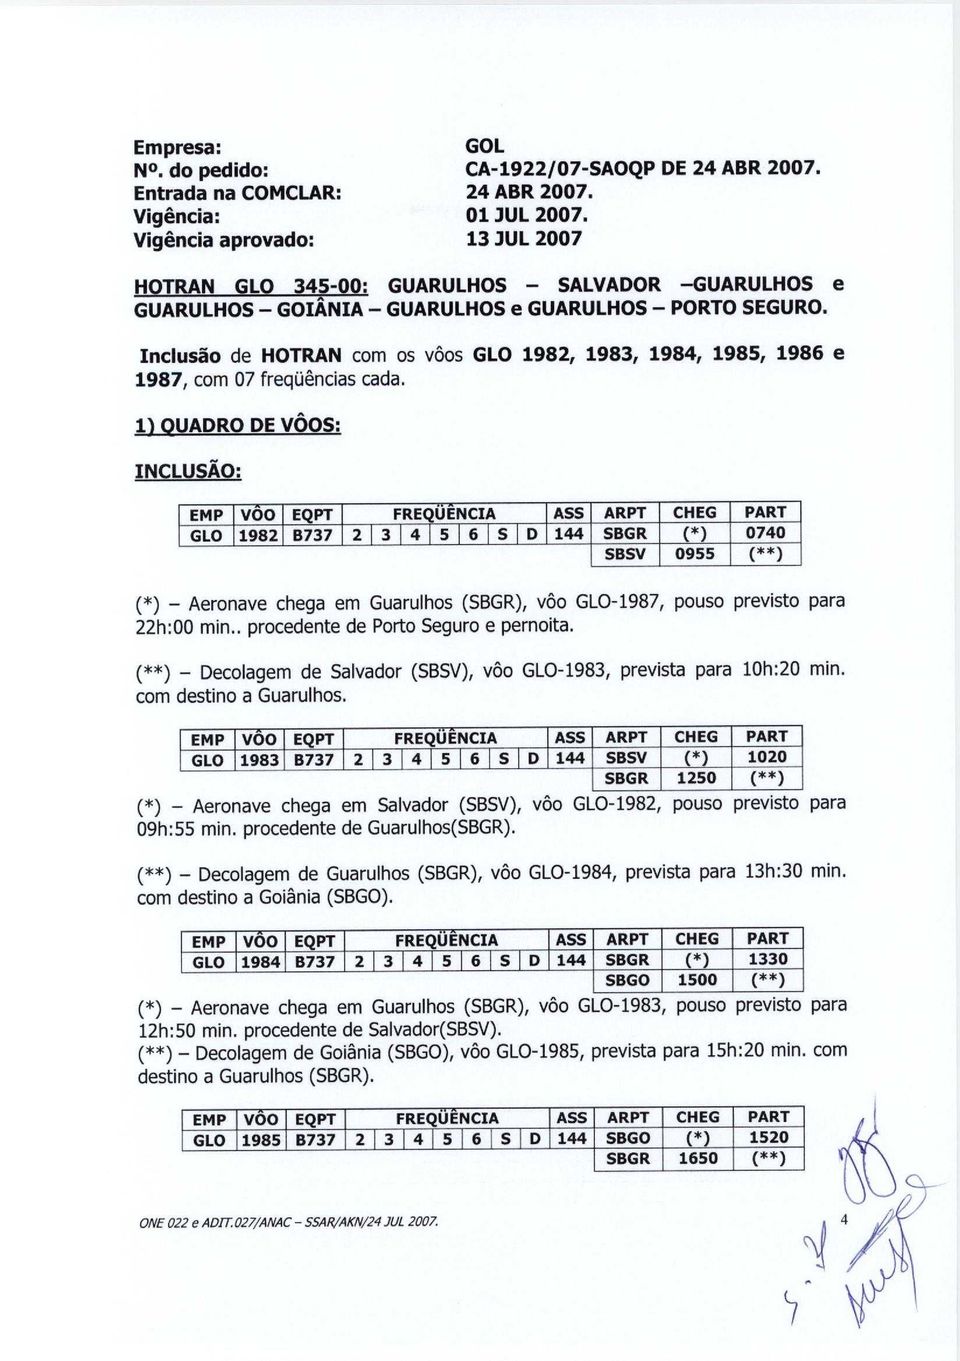 Inclusao de HOTRAN com os voos GLO 1982, 1983, 1984, 1985, 1986 e 1987, com 07 frequencias cada.